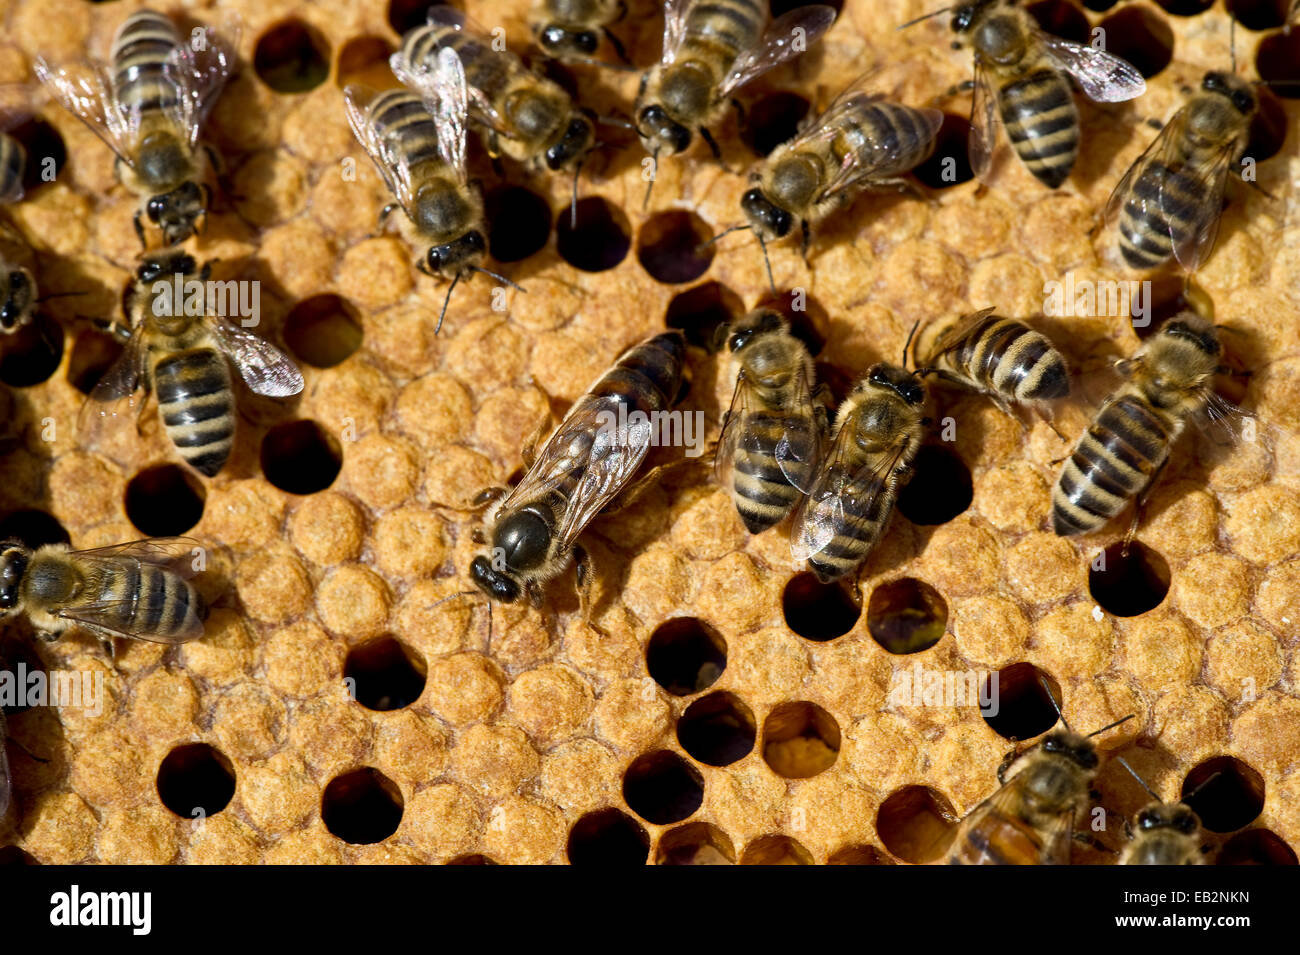 Les abeilles domestiques (Apis sp.) sur un rayon de miel, reine des abeilles au centre, Allemagne Banque D'Images